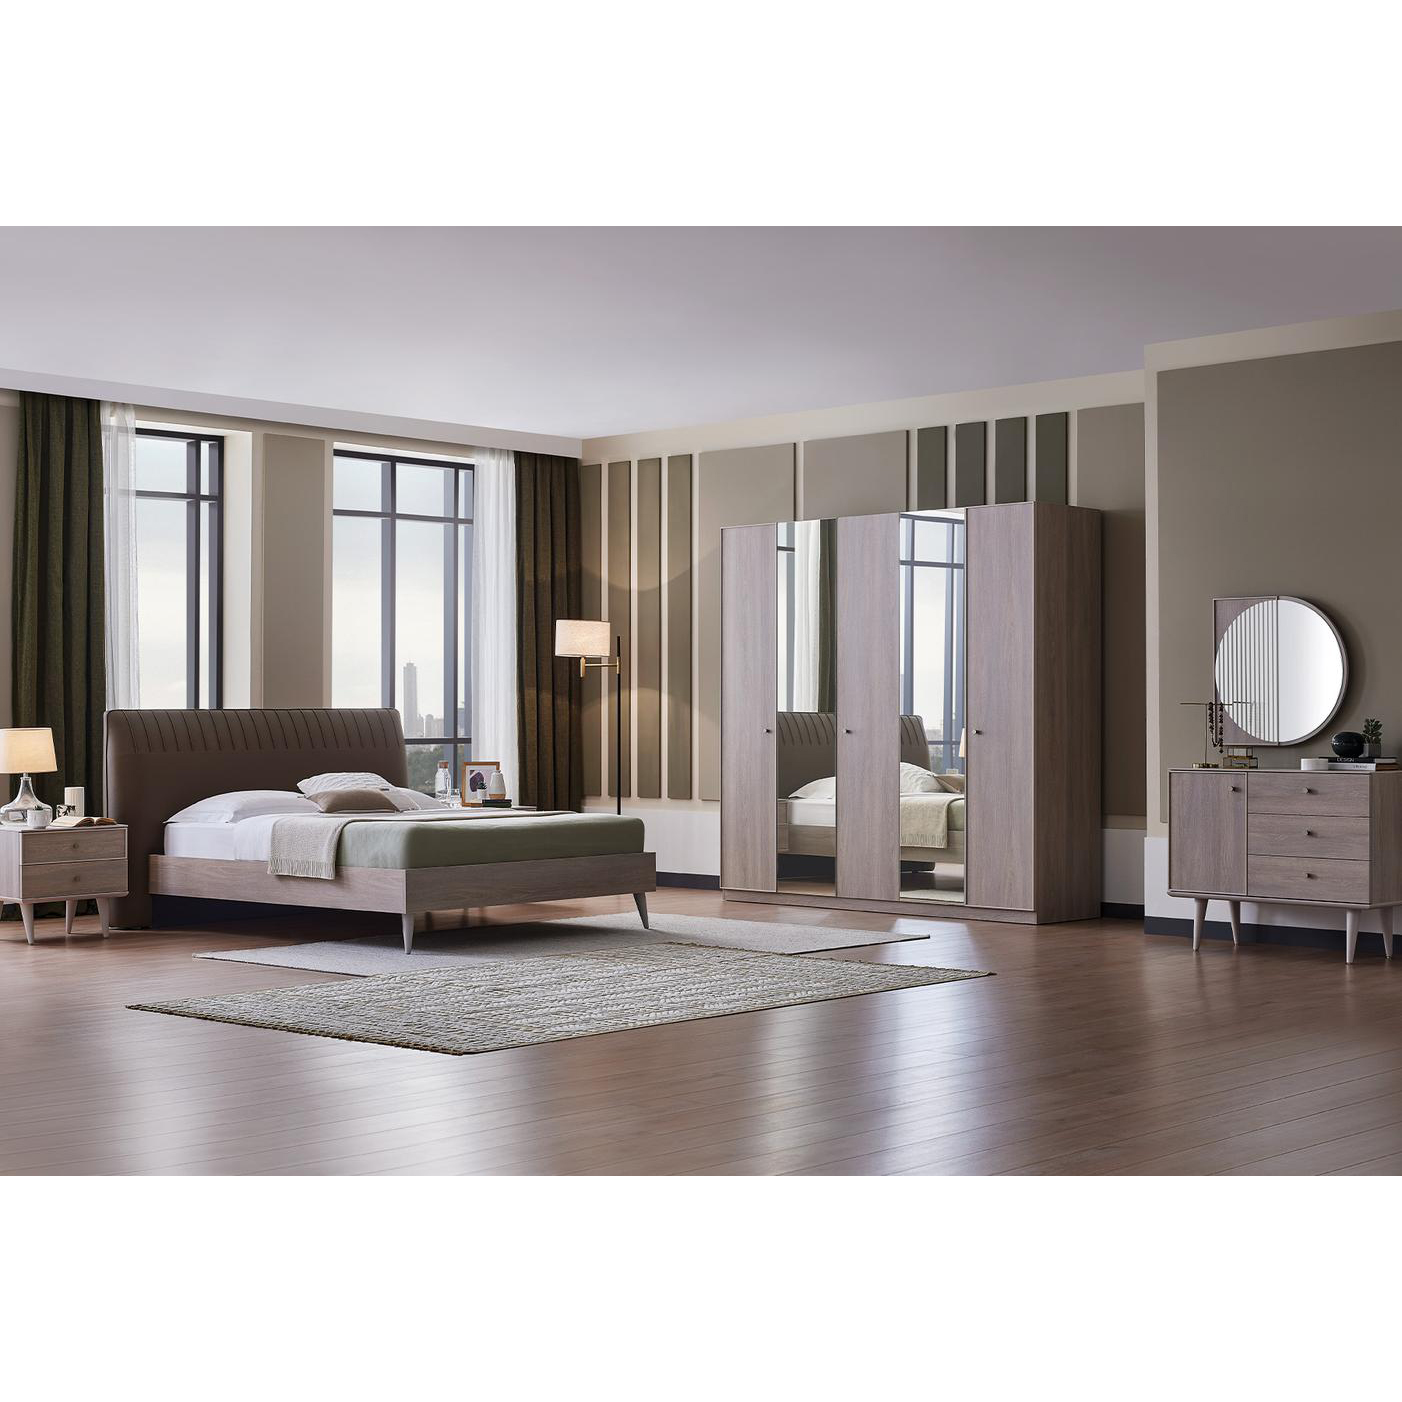 Кровать Enza Home Basel, 150х200 см, изголовье- кремовый 3001-K1-52102 (EH59523+EH59489)EH59523+EH59489